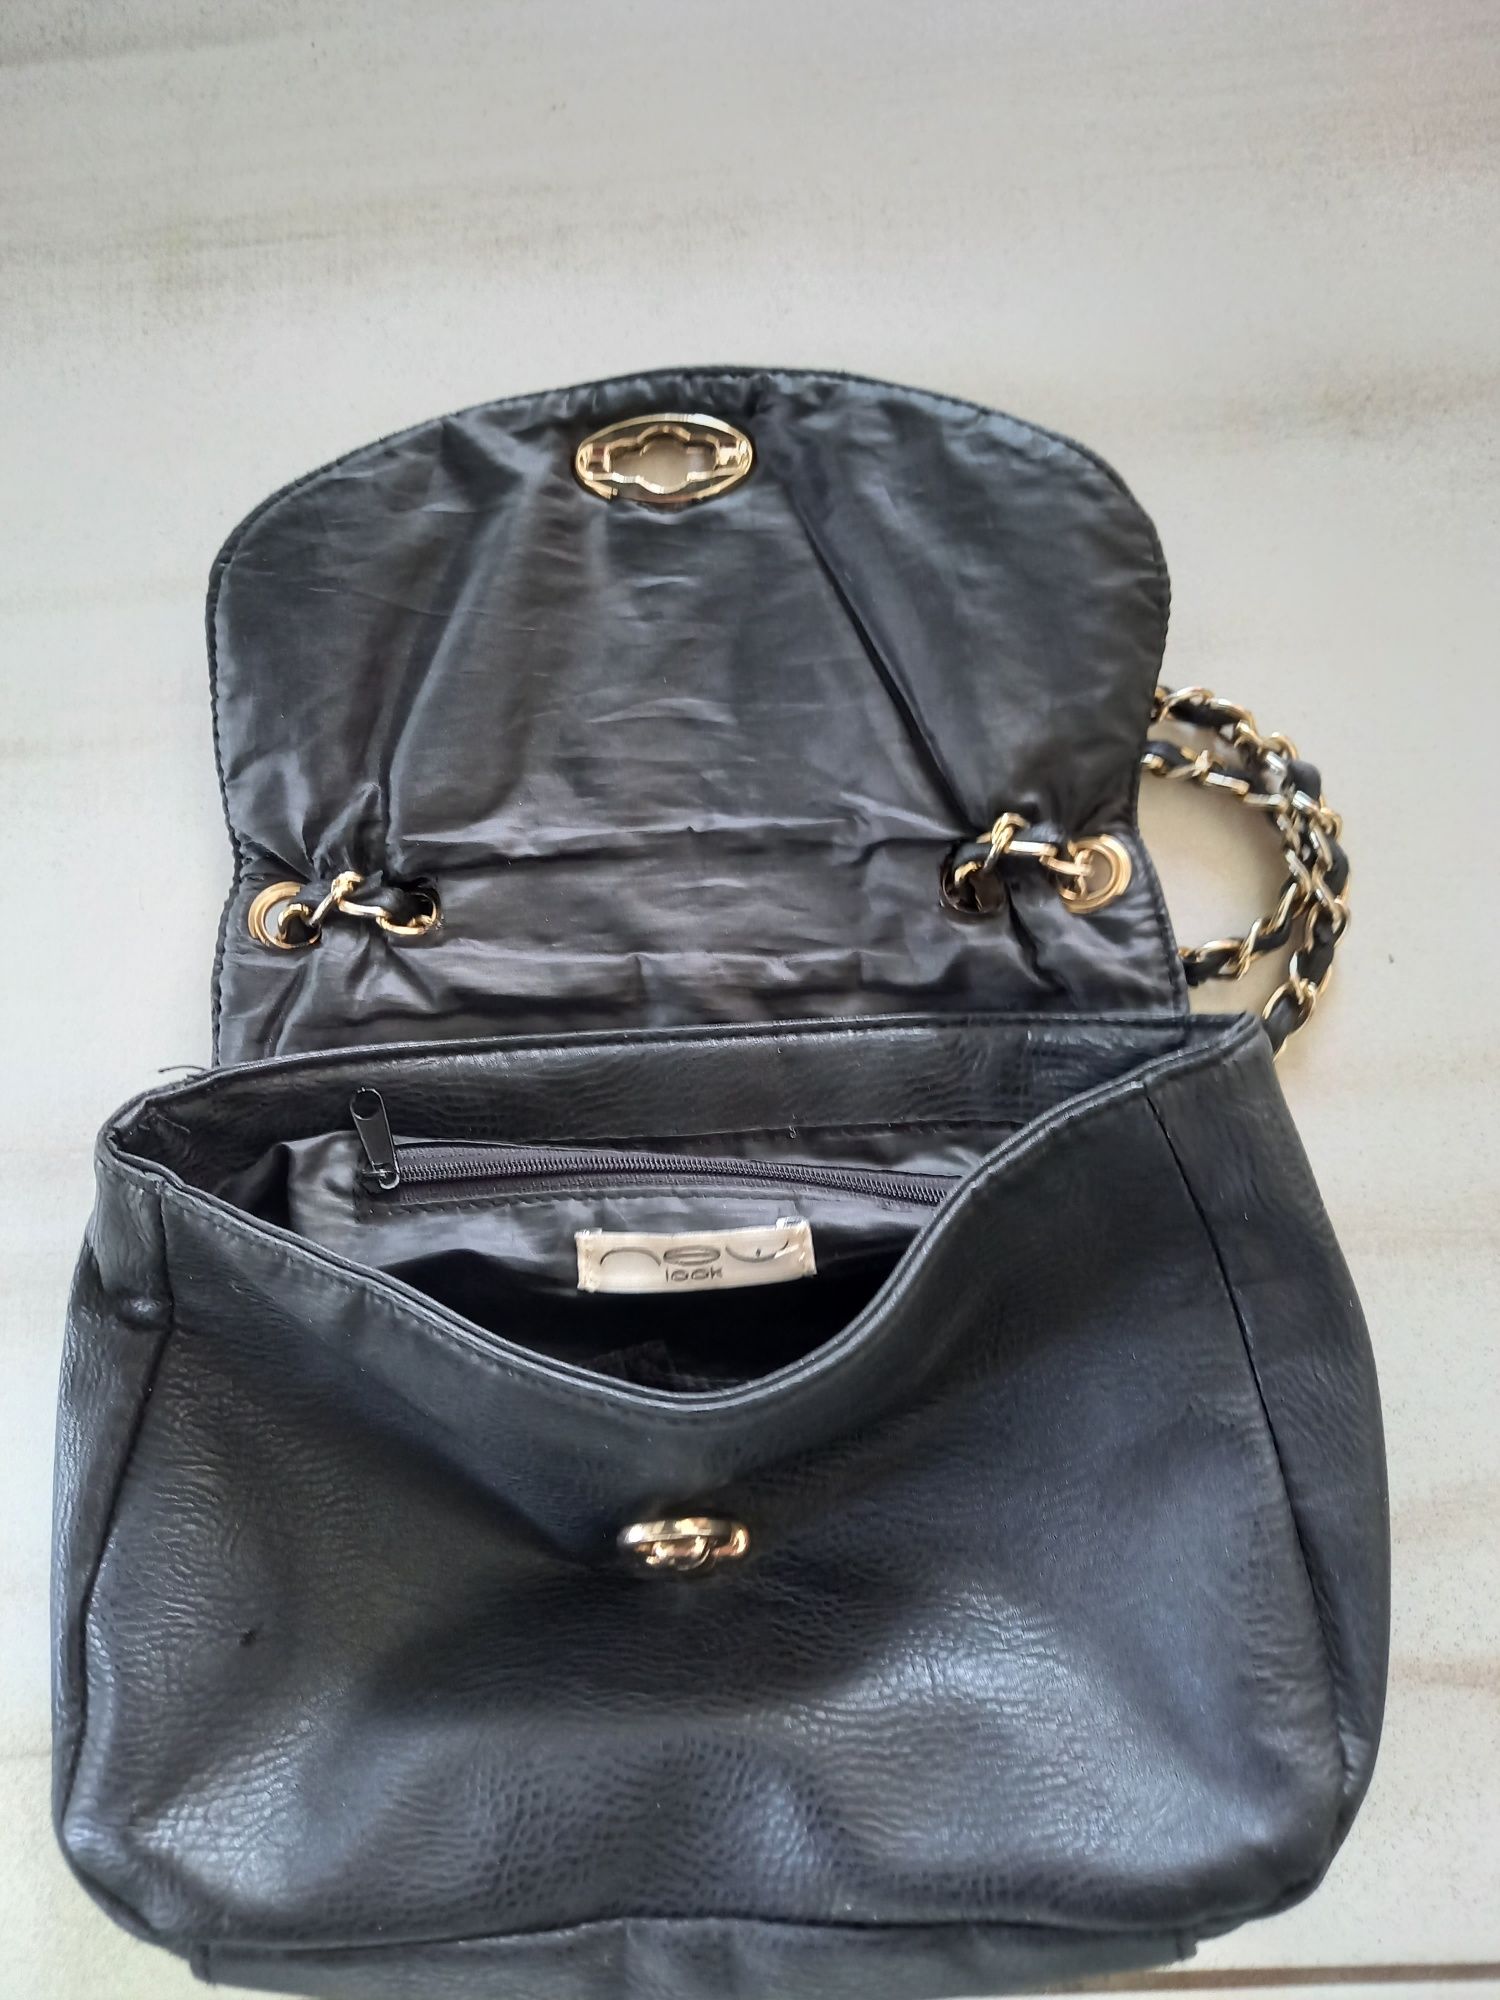 Śliczna torebka czarna ze złotym zamkiem i łańcuchami marki New Look.